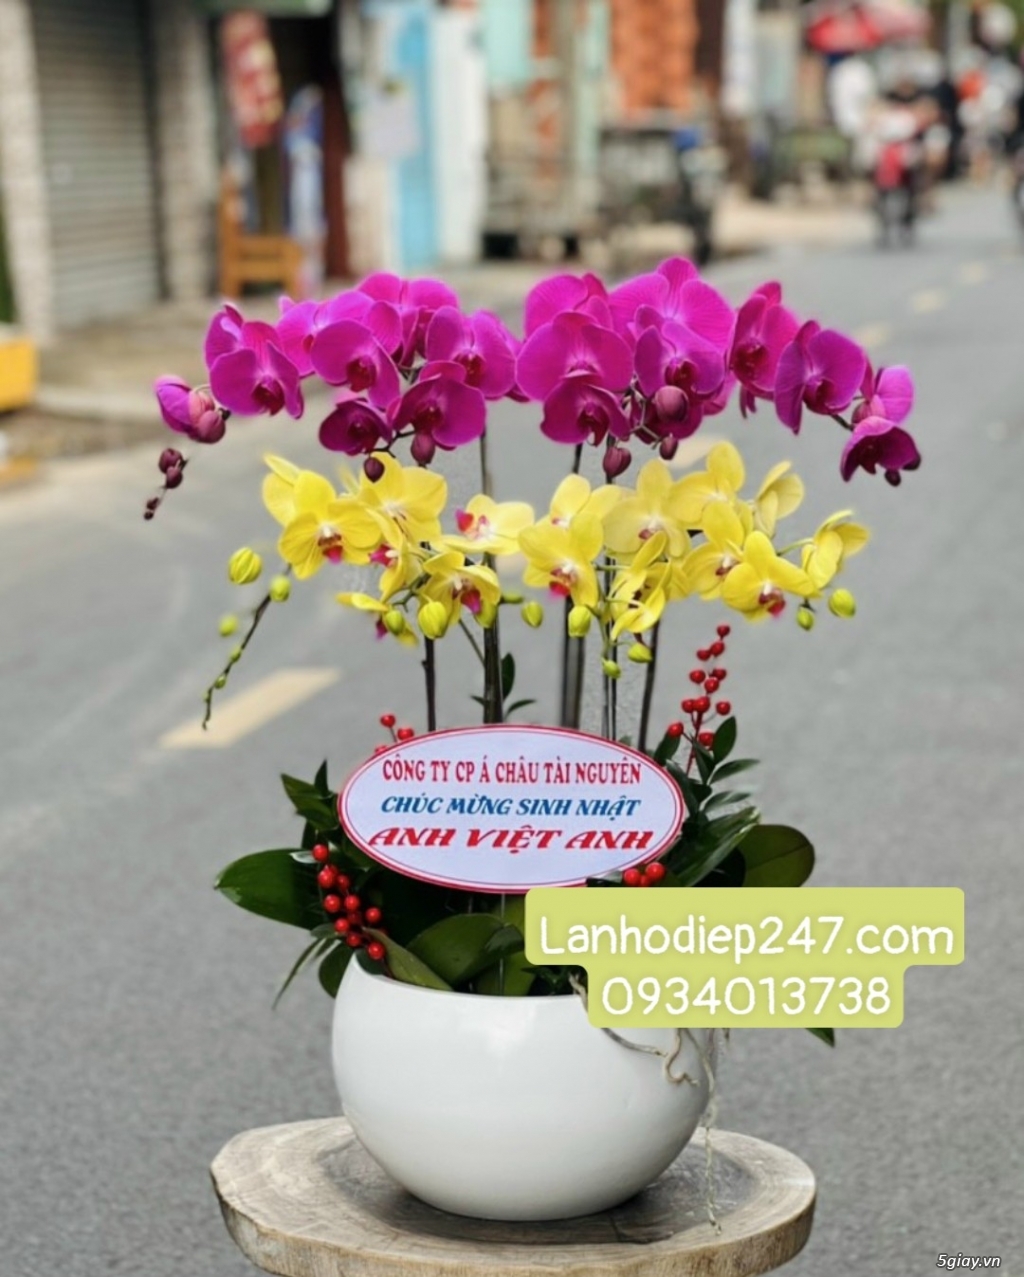 Địa chỉ mua hoa lan hồ điệp Apollo cao cấp uy tín tại Sài Gòn - 4